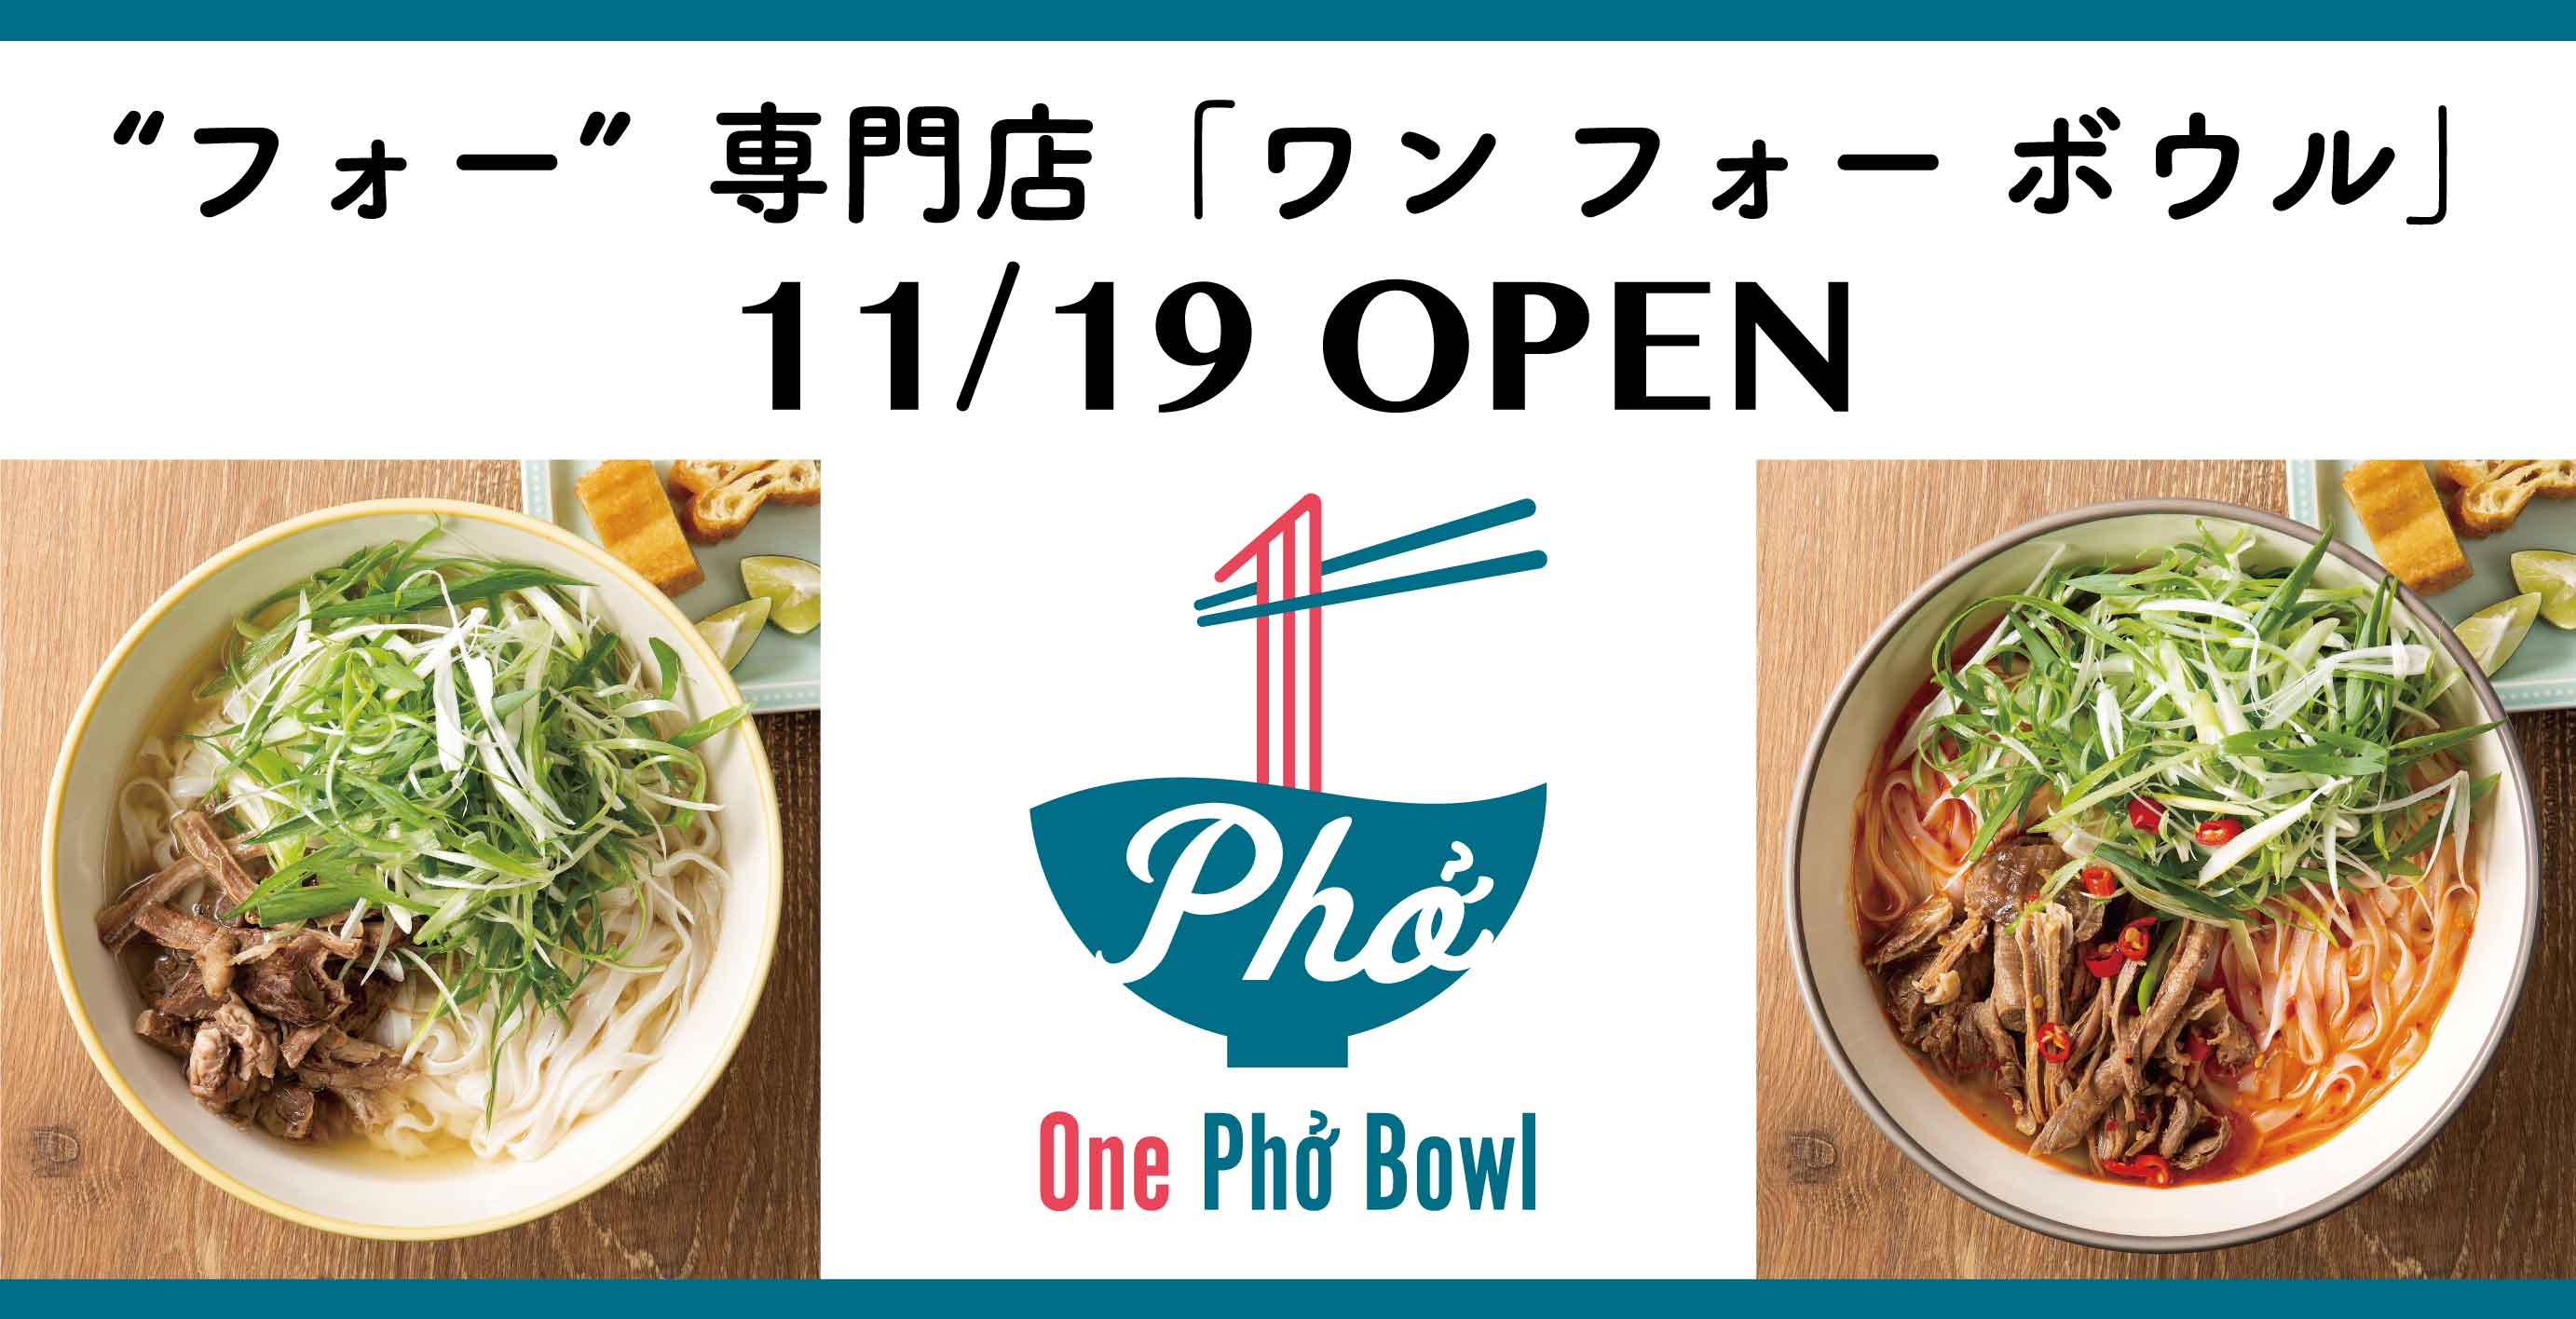 “フォー”の専門店 One Pho Bowl（ワンフォーボウル）公式サイト